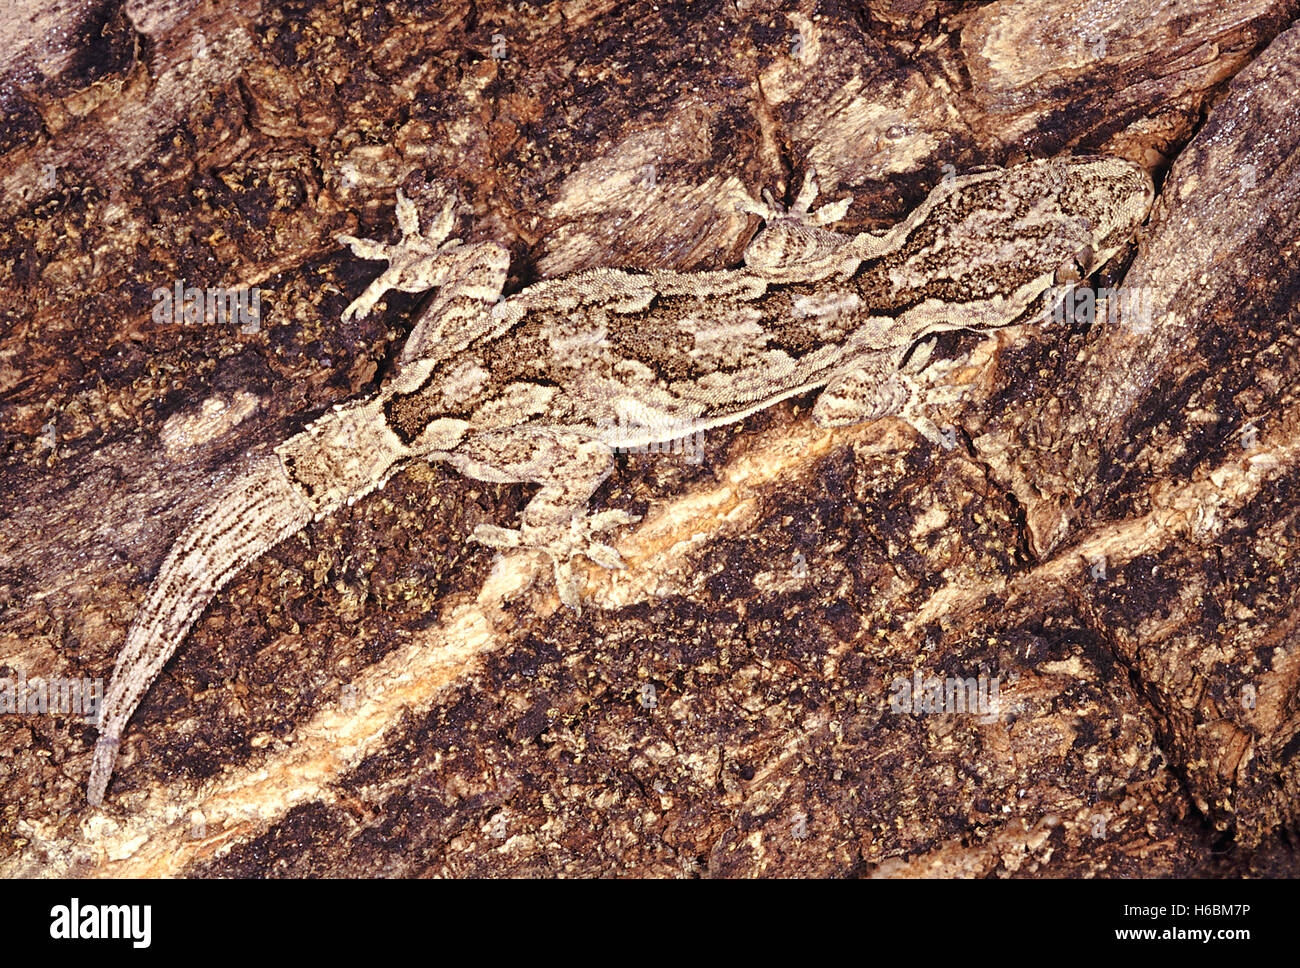 Hemidactylus leschnaultii. corteccia gecko. una ben mimetizzata geco si trovano di solito sui tronchi. è in grado di cambiare la sua ombra secondo circondante Foto Stock